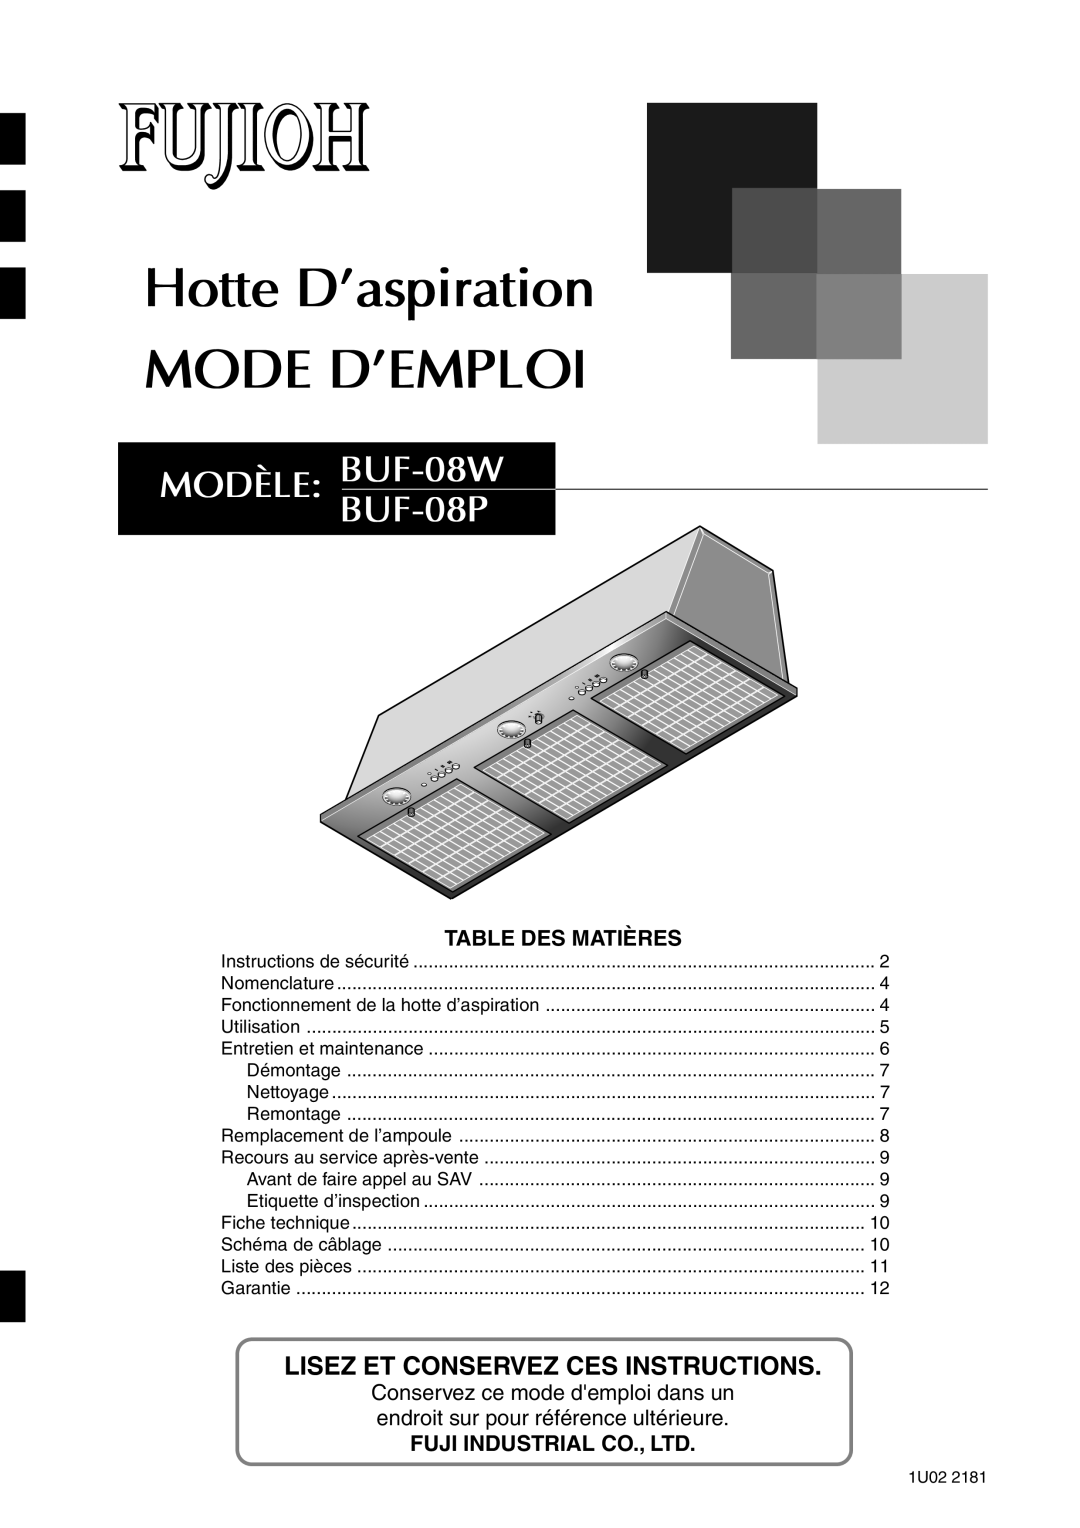 Fujioh Hotte D’aspiration MODE D’EMPLOI, MODÈLE: BUF-08W BUF-08P, Table Des Matières, Fuji Industrial Co., Ltd 